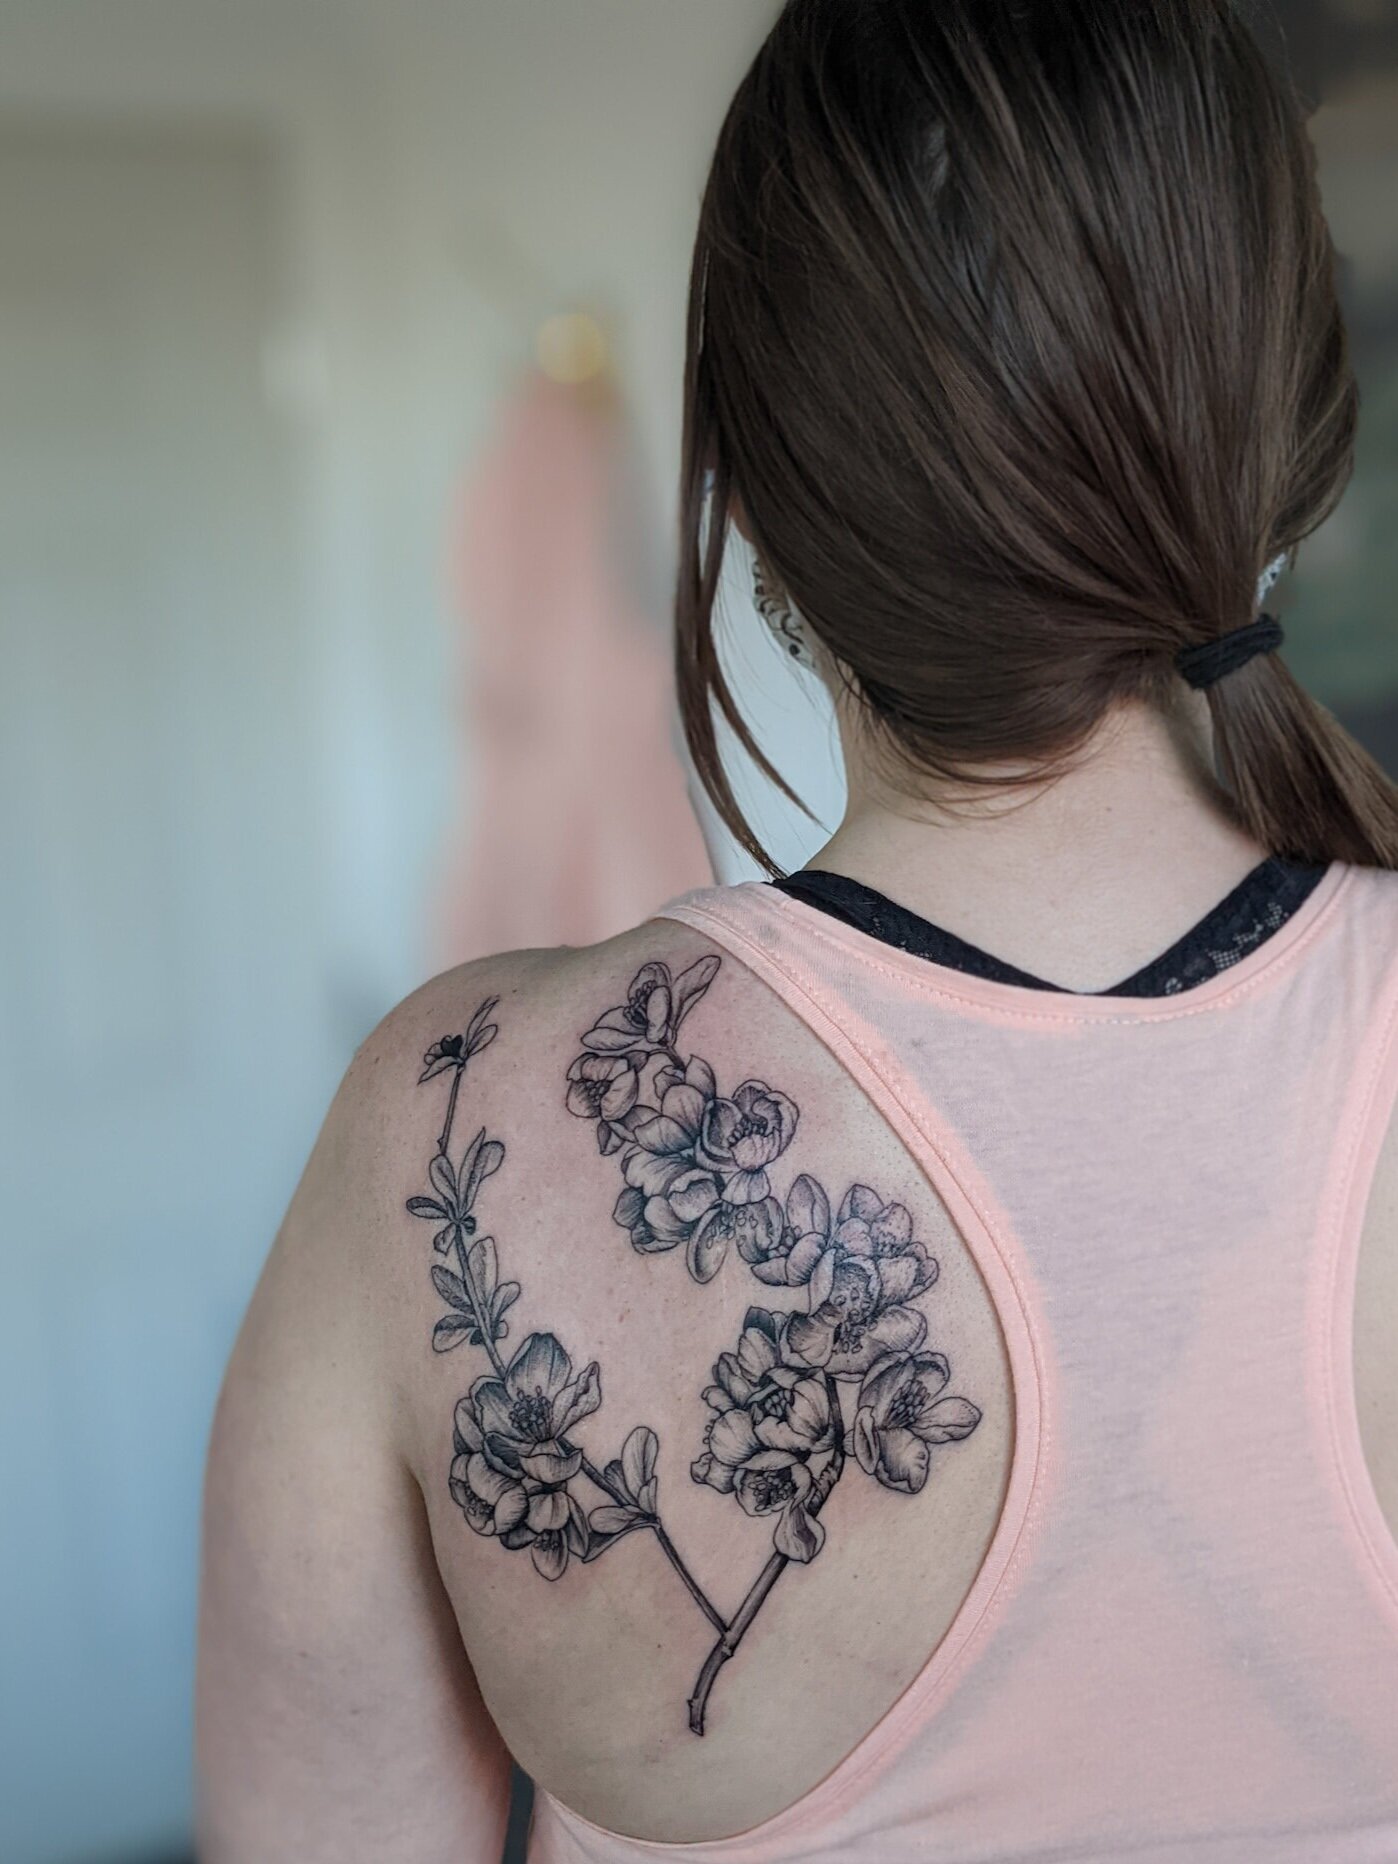 Honeysuckle Flower Tattoo Design Ideas  inktells